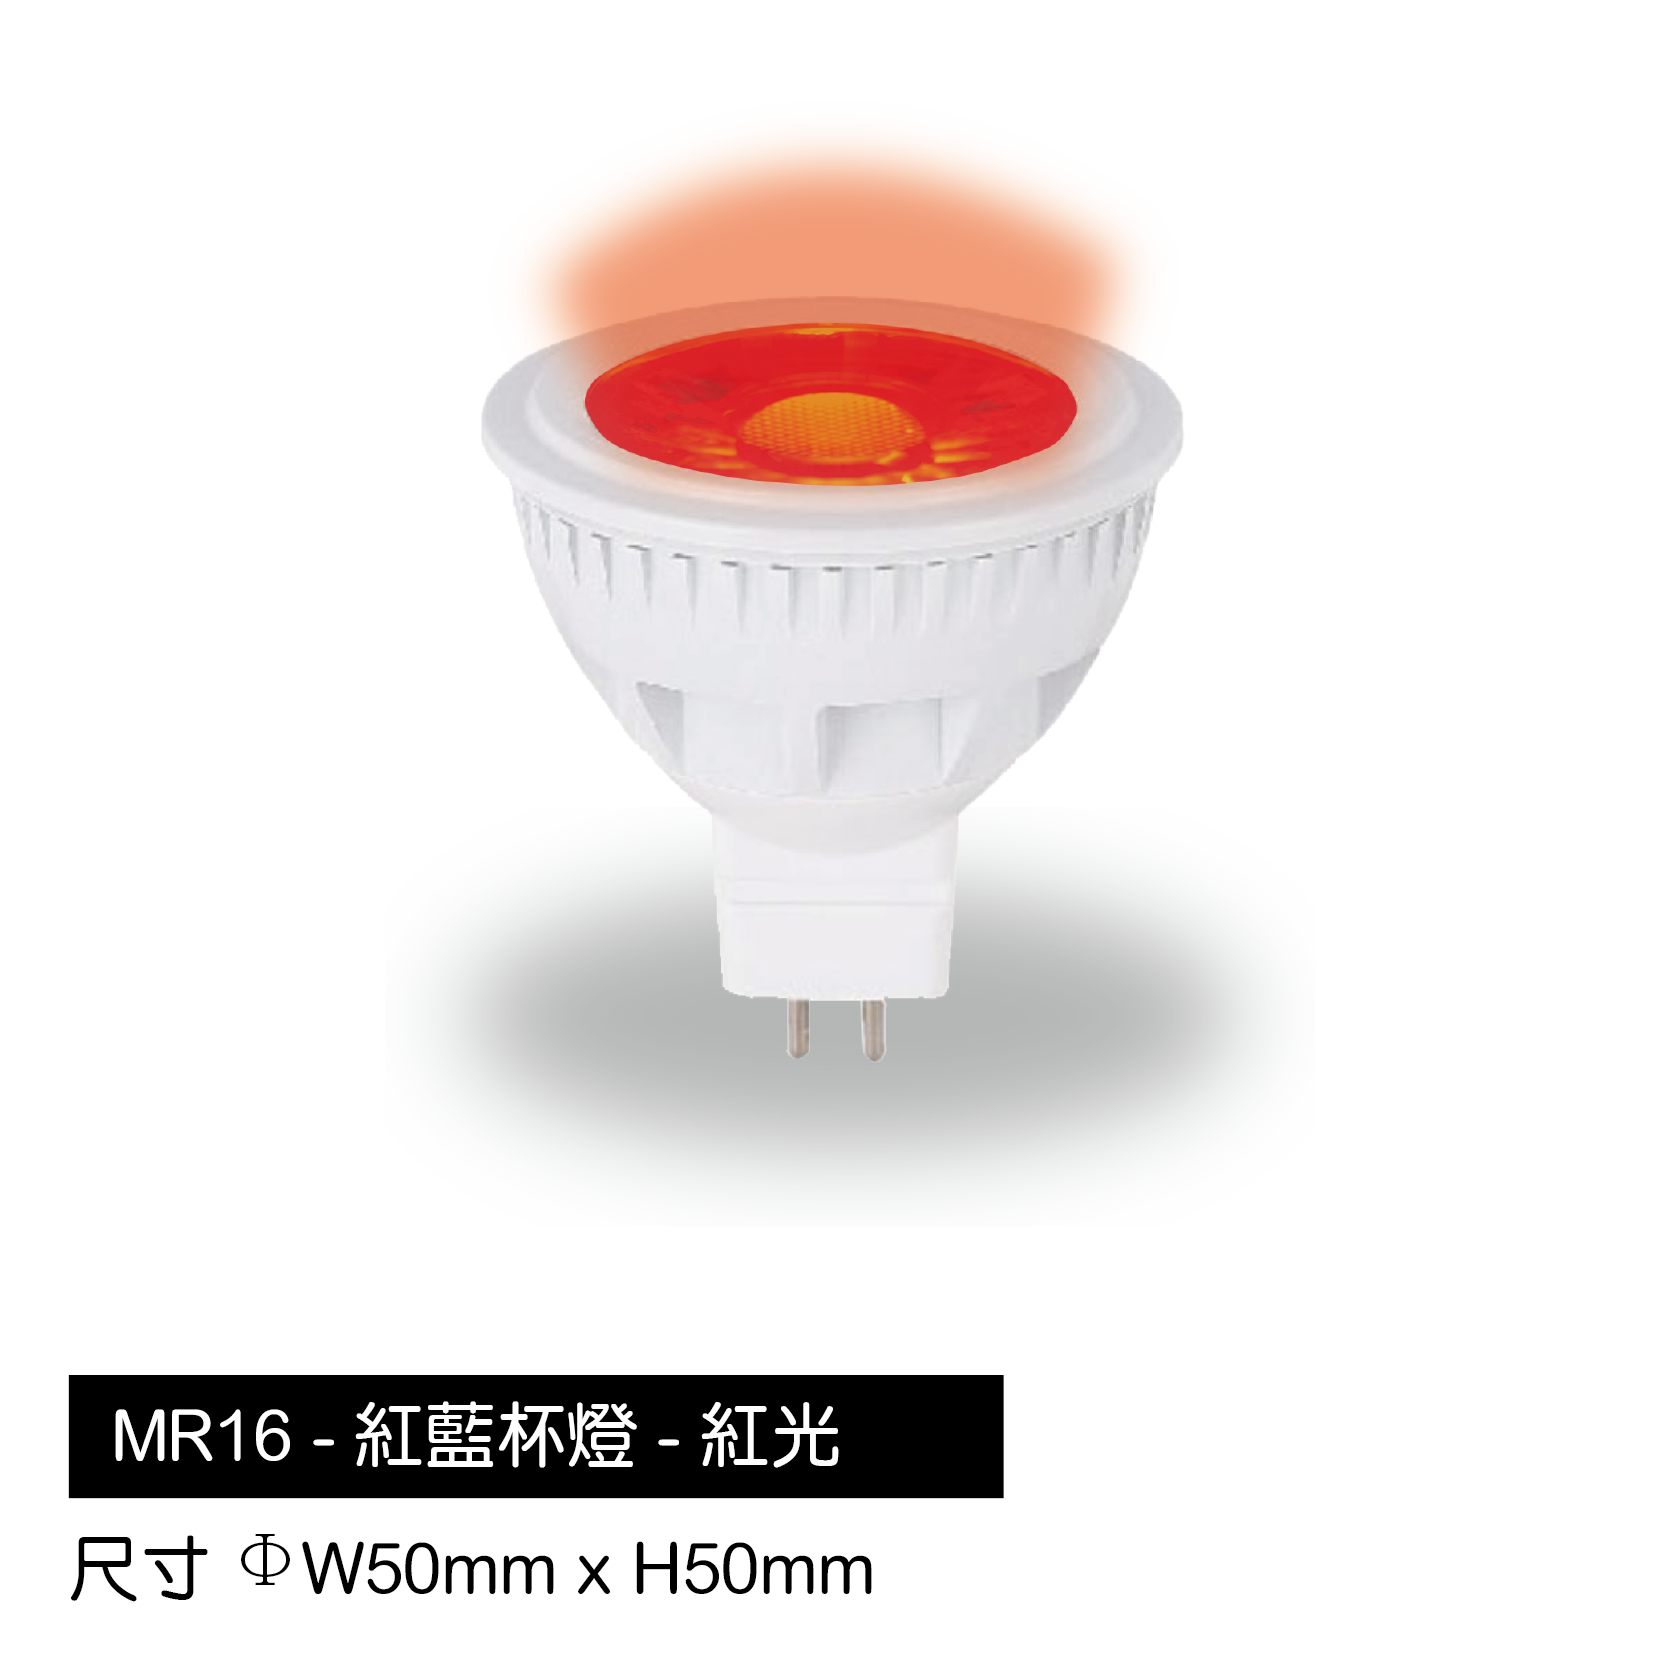 MR16-紅杯燈